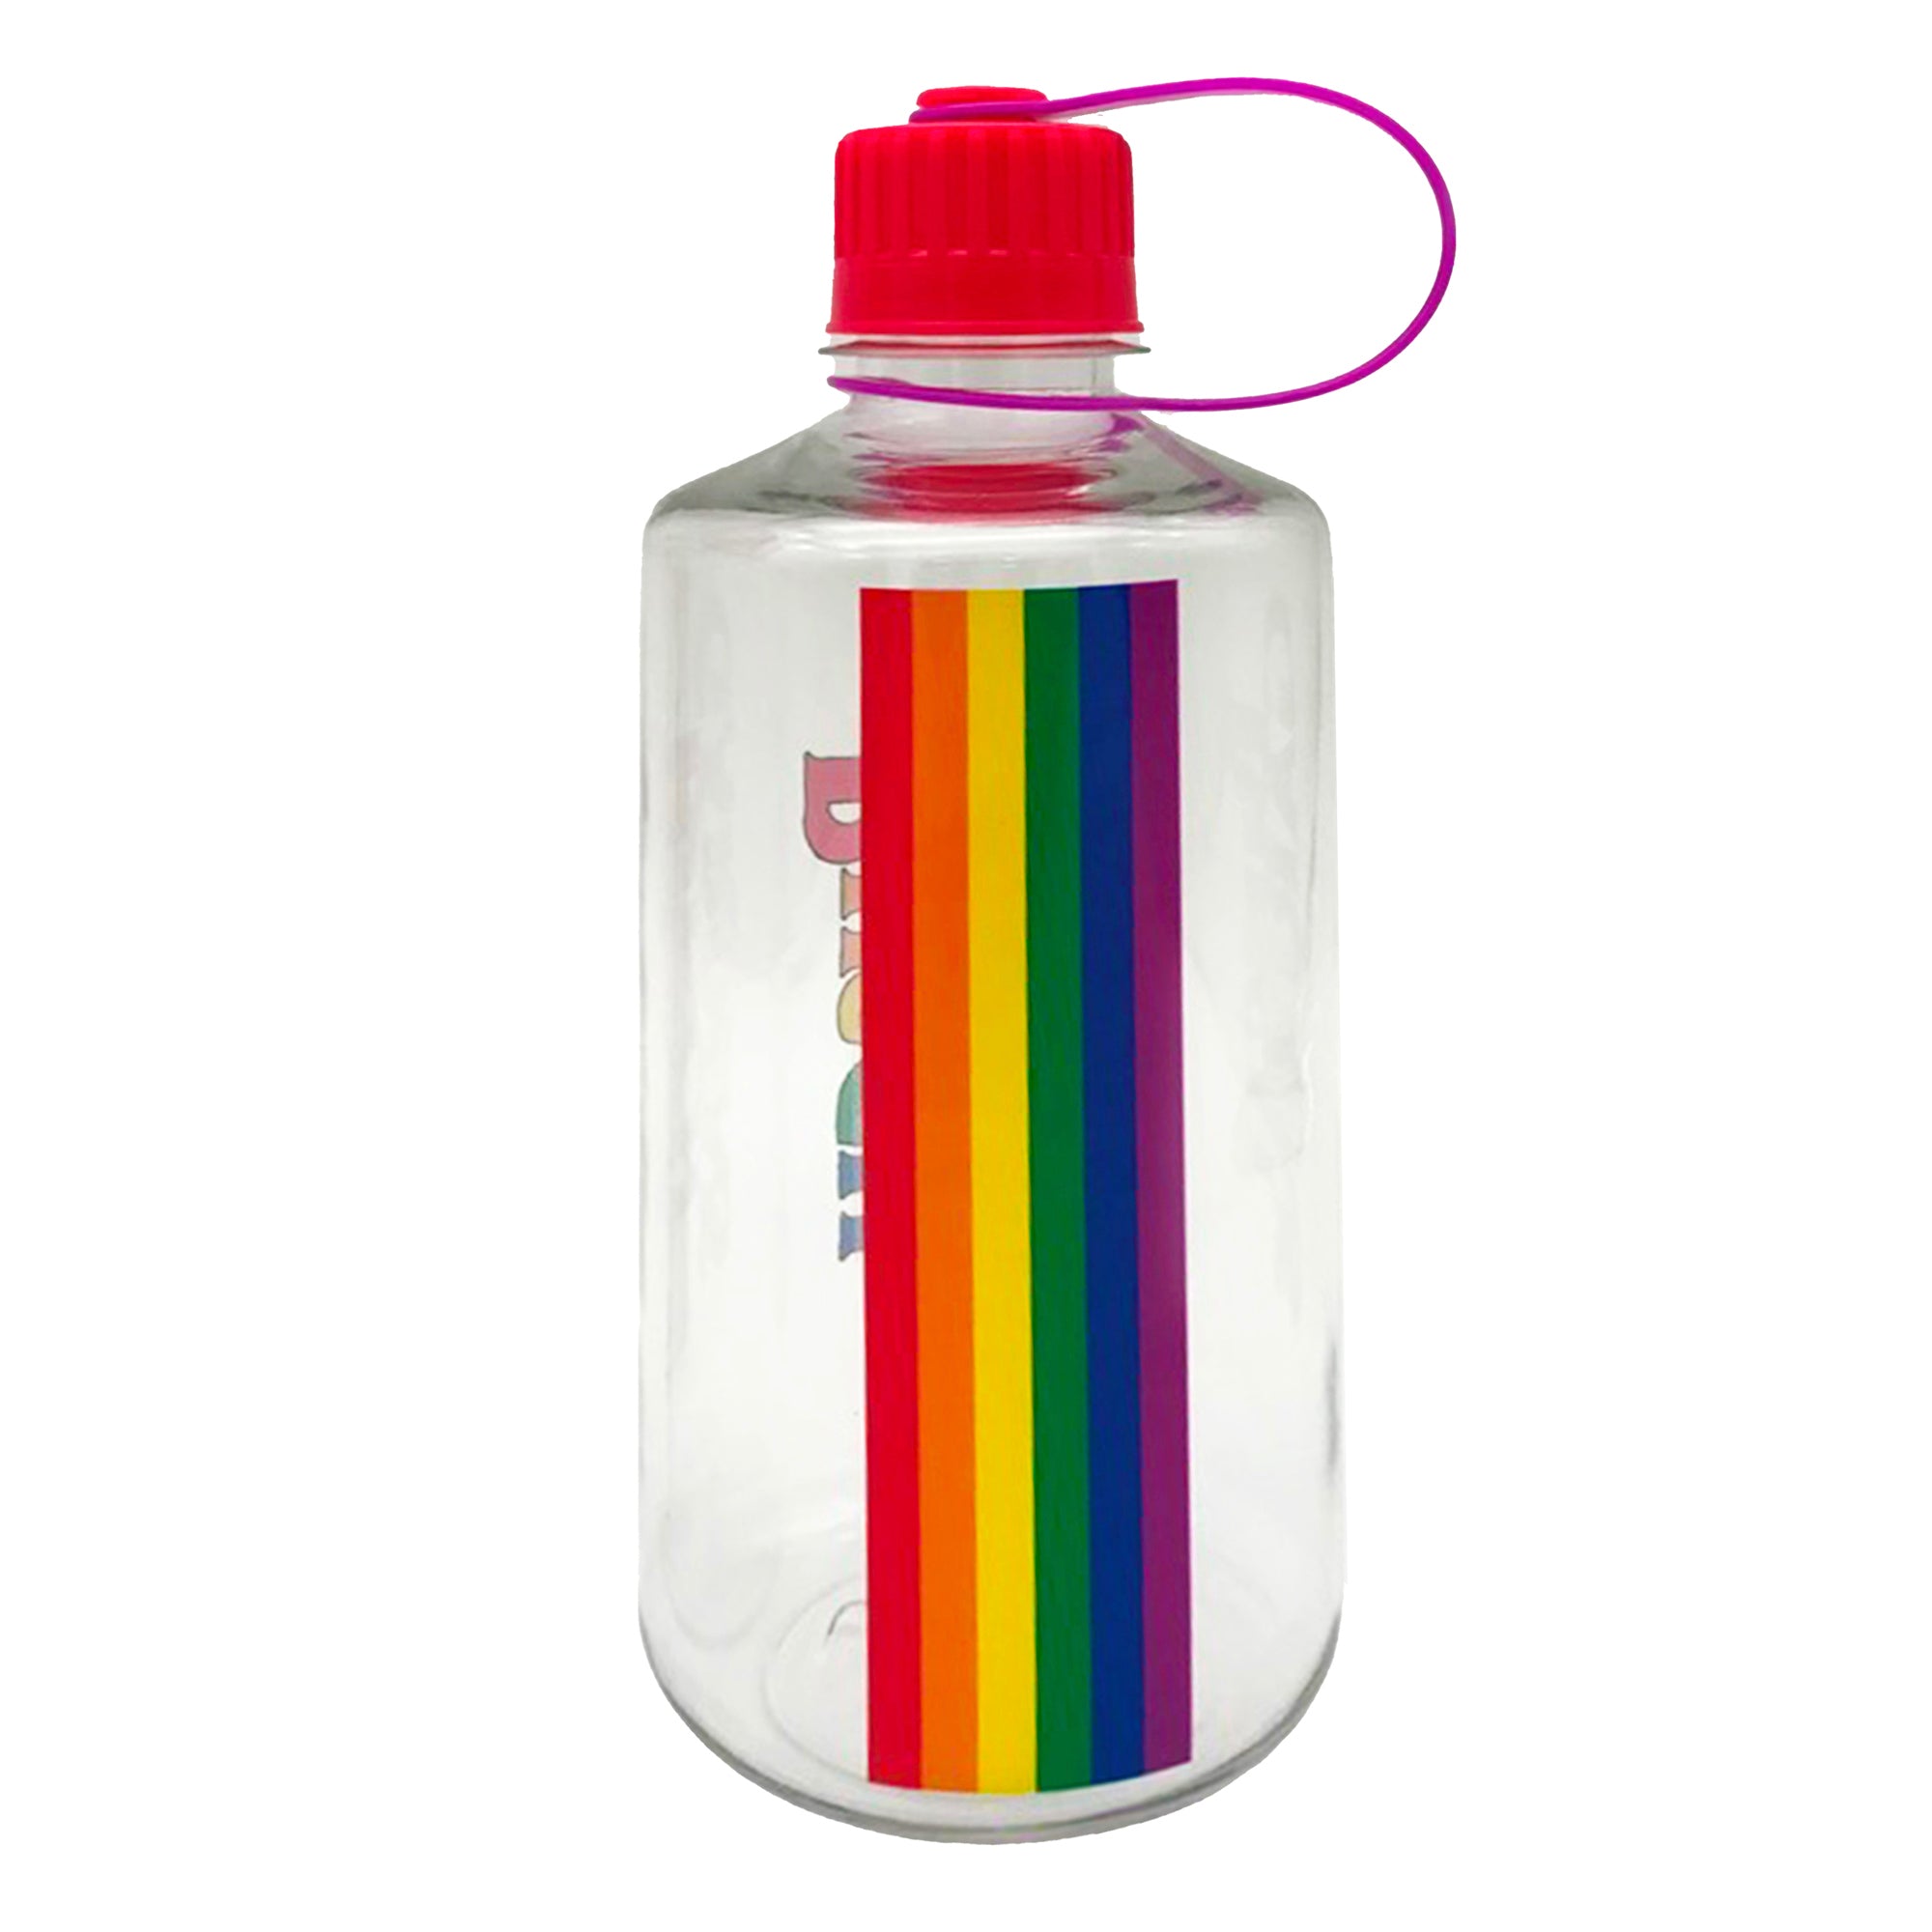 HUGGER】Kids Water Bottle, 16oz, Tritan, Circus - Shop wesmile